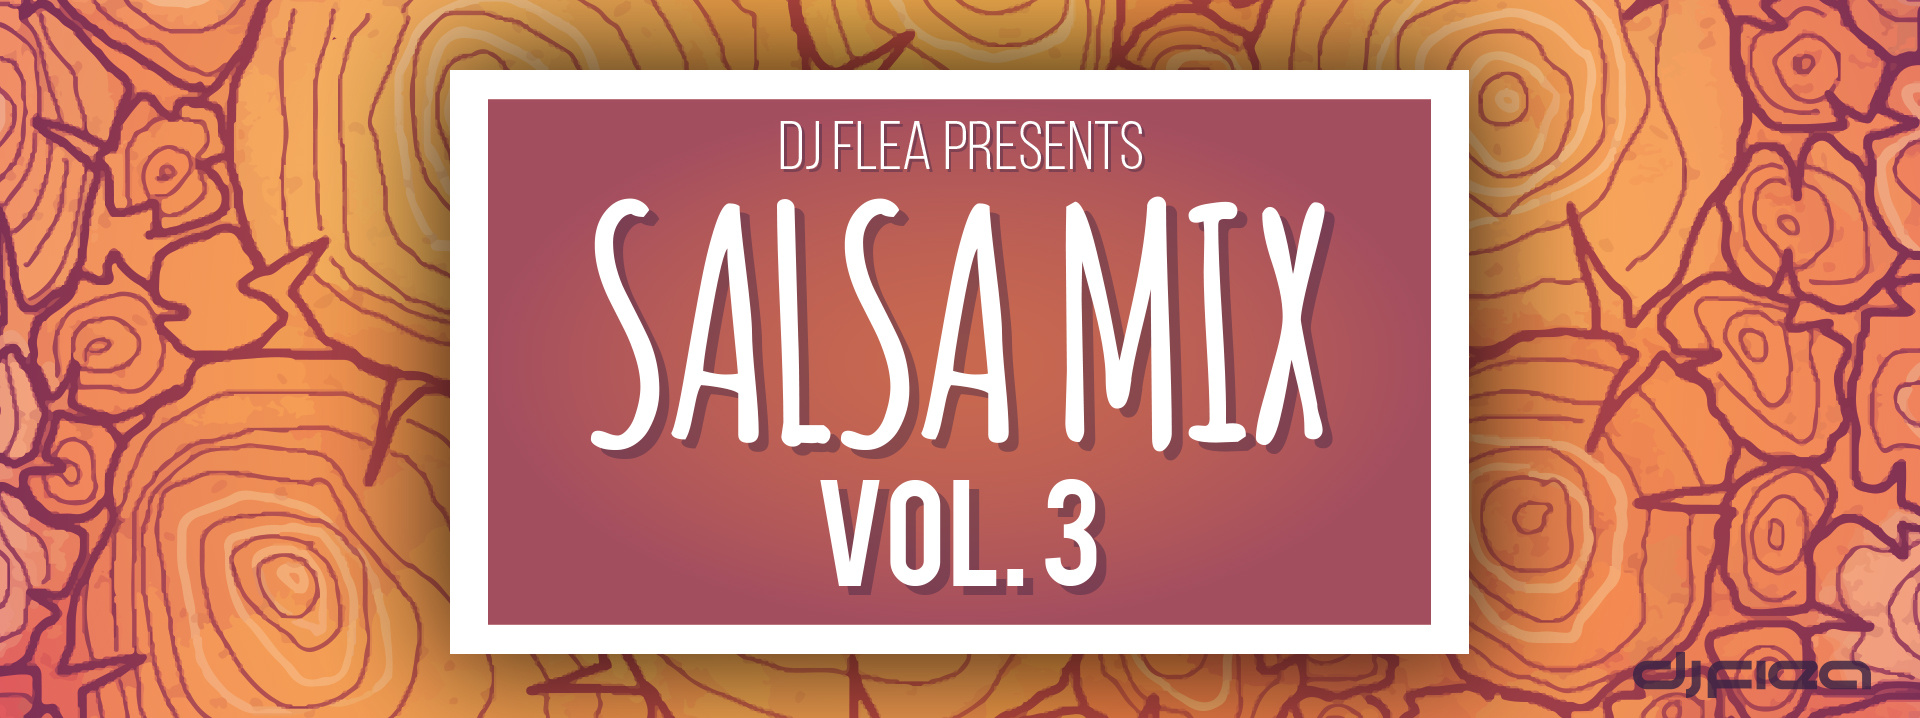 Salsa Mix, Vol. 3